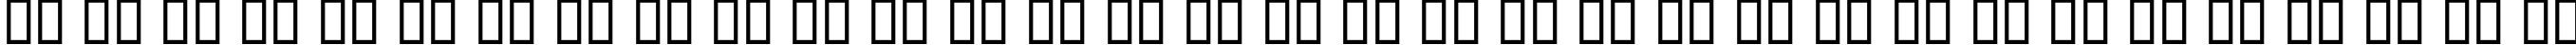 Пример написания русского алфавита шрифтом Andalus